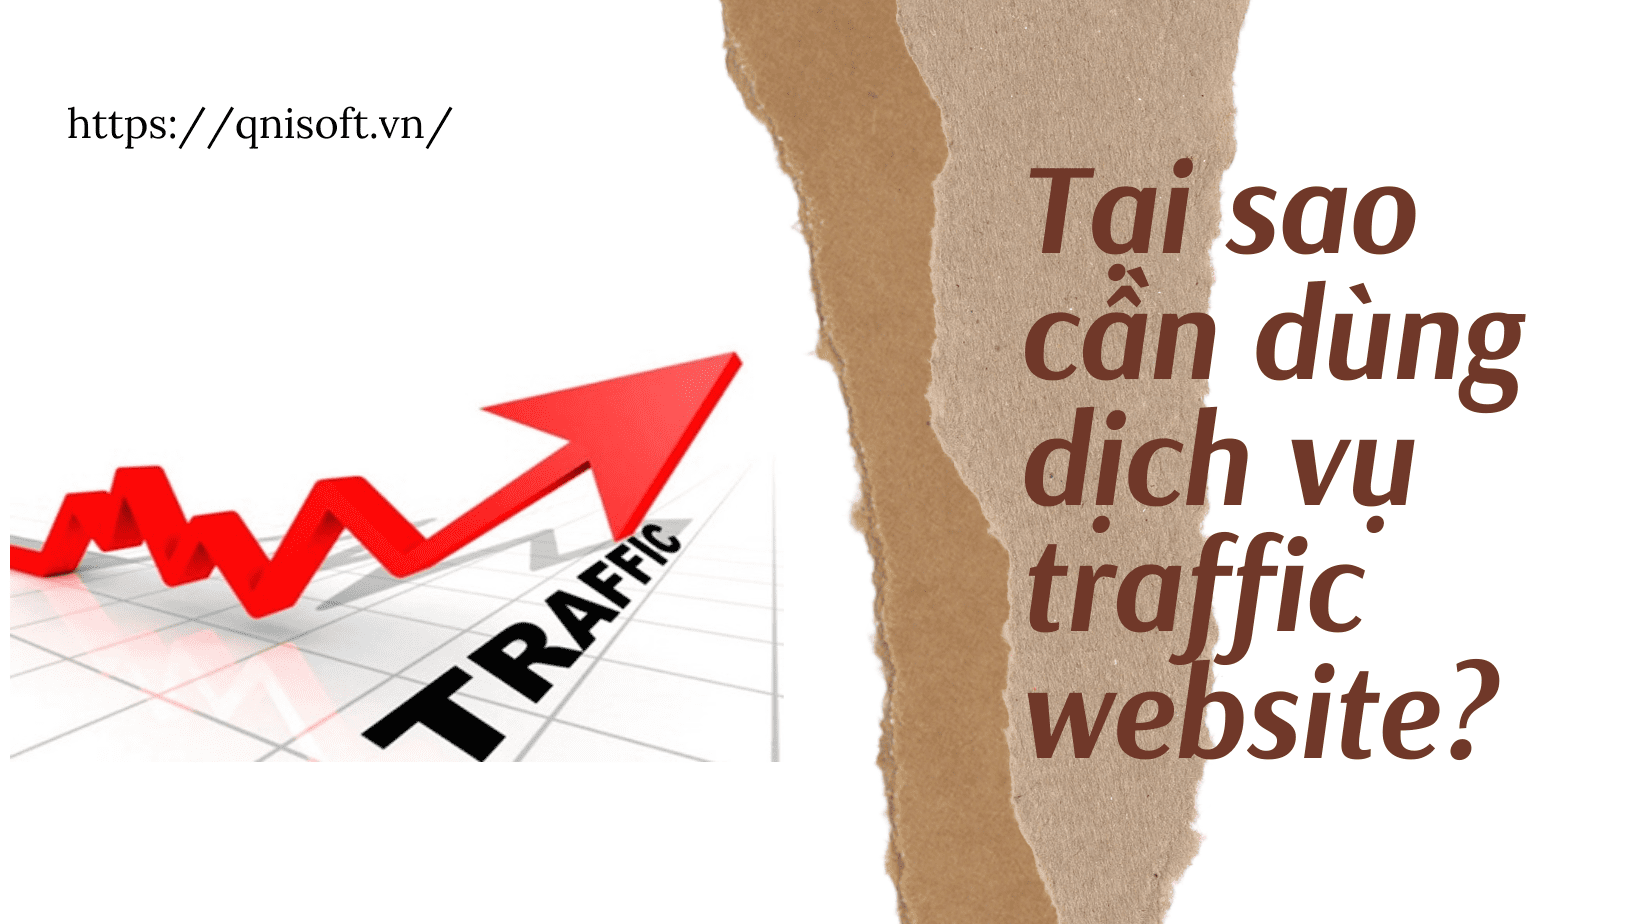 Tại sao cần dùng dịch vụ traffic website